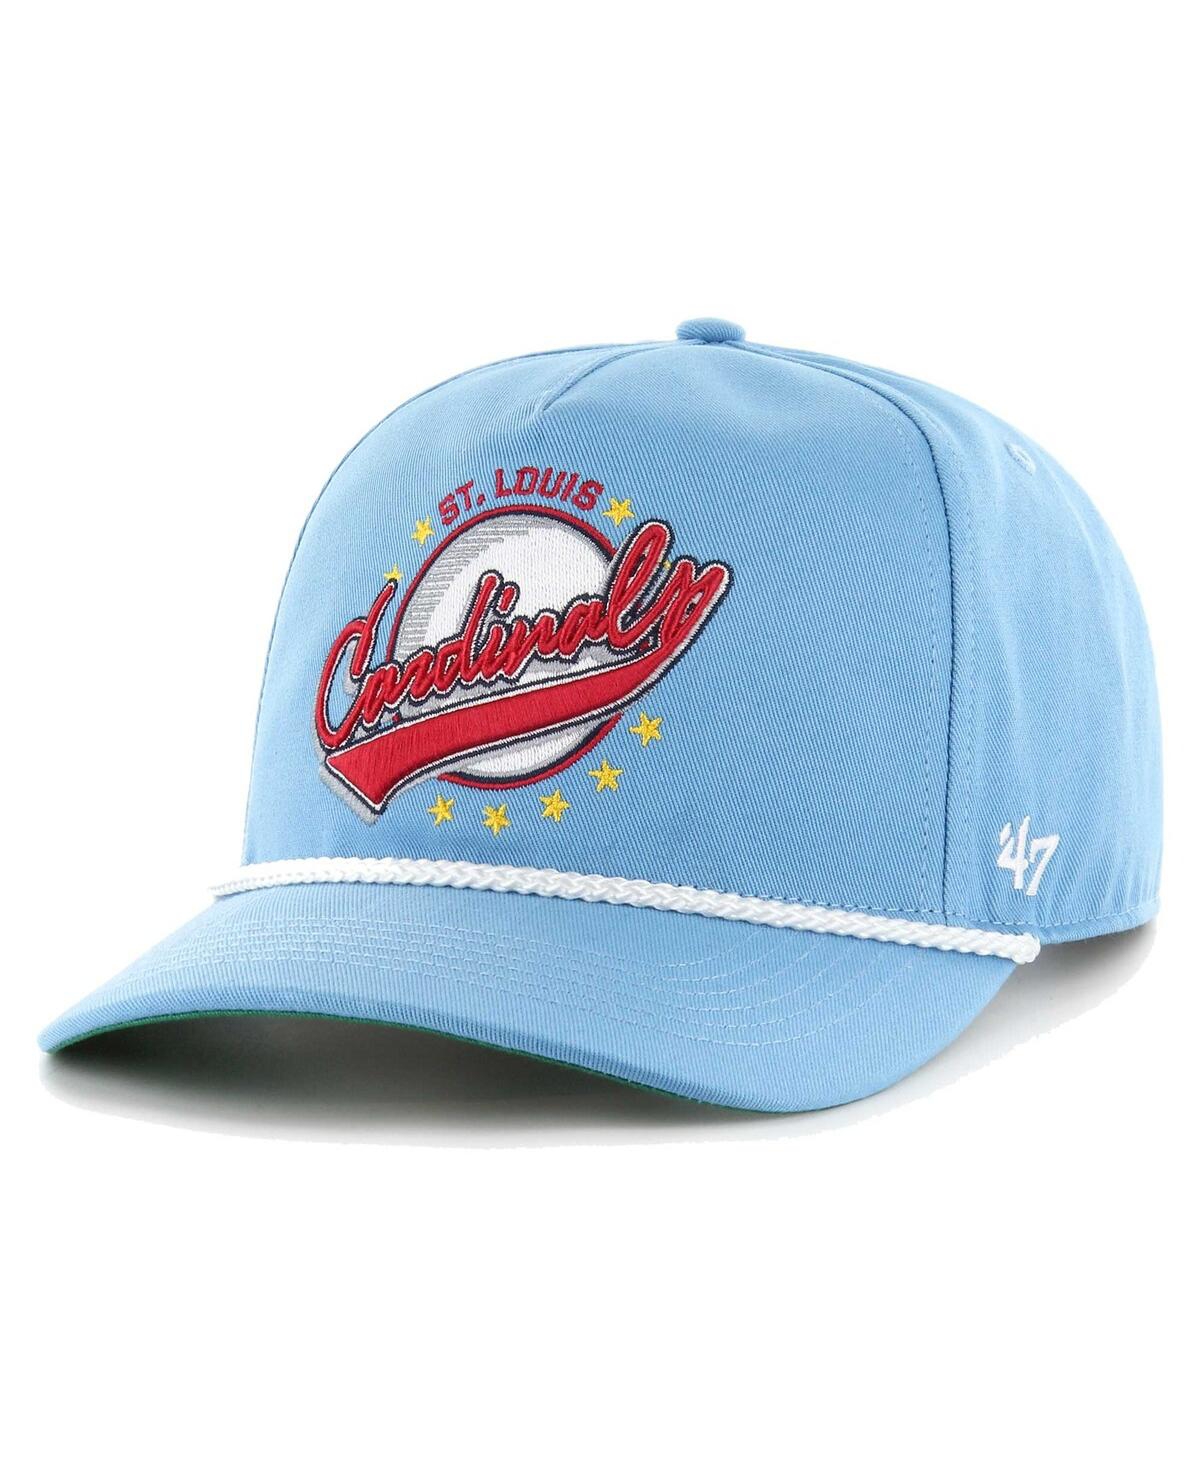 47 Men's Light Blue St. Louis Cardinals Wax Pack Collection Premier Hitch Adjustable Hat - Light Blue